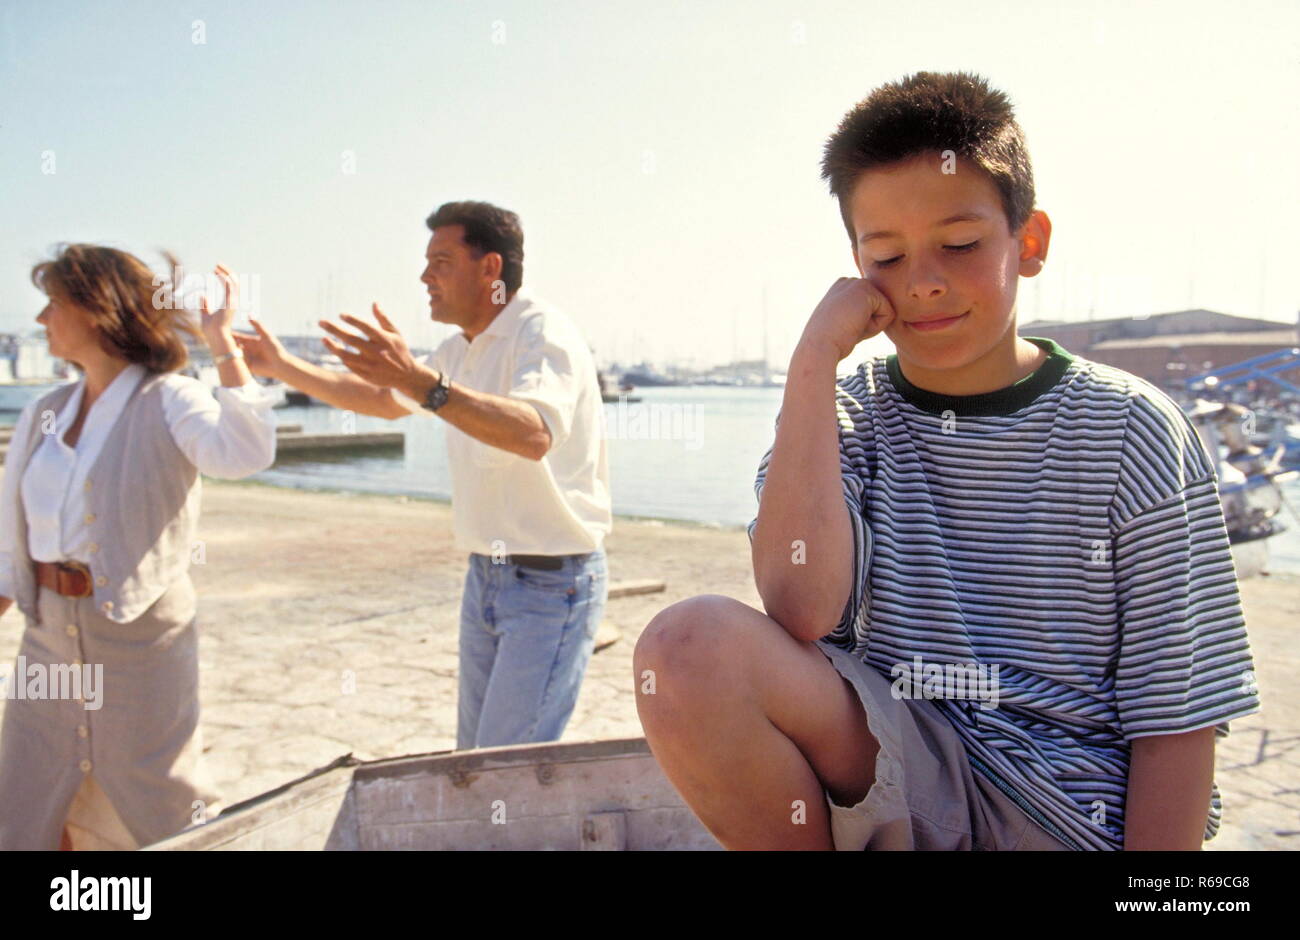 Retrato, Junge mit kurzen braunen Haaren sitzt traurig en einem Ruderboot, waehrend sich sena Eltern auf dem Kai lautstark streiten Foto de stock